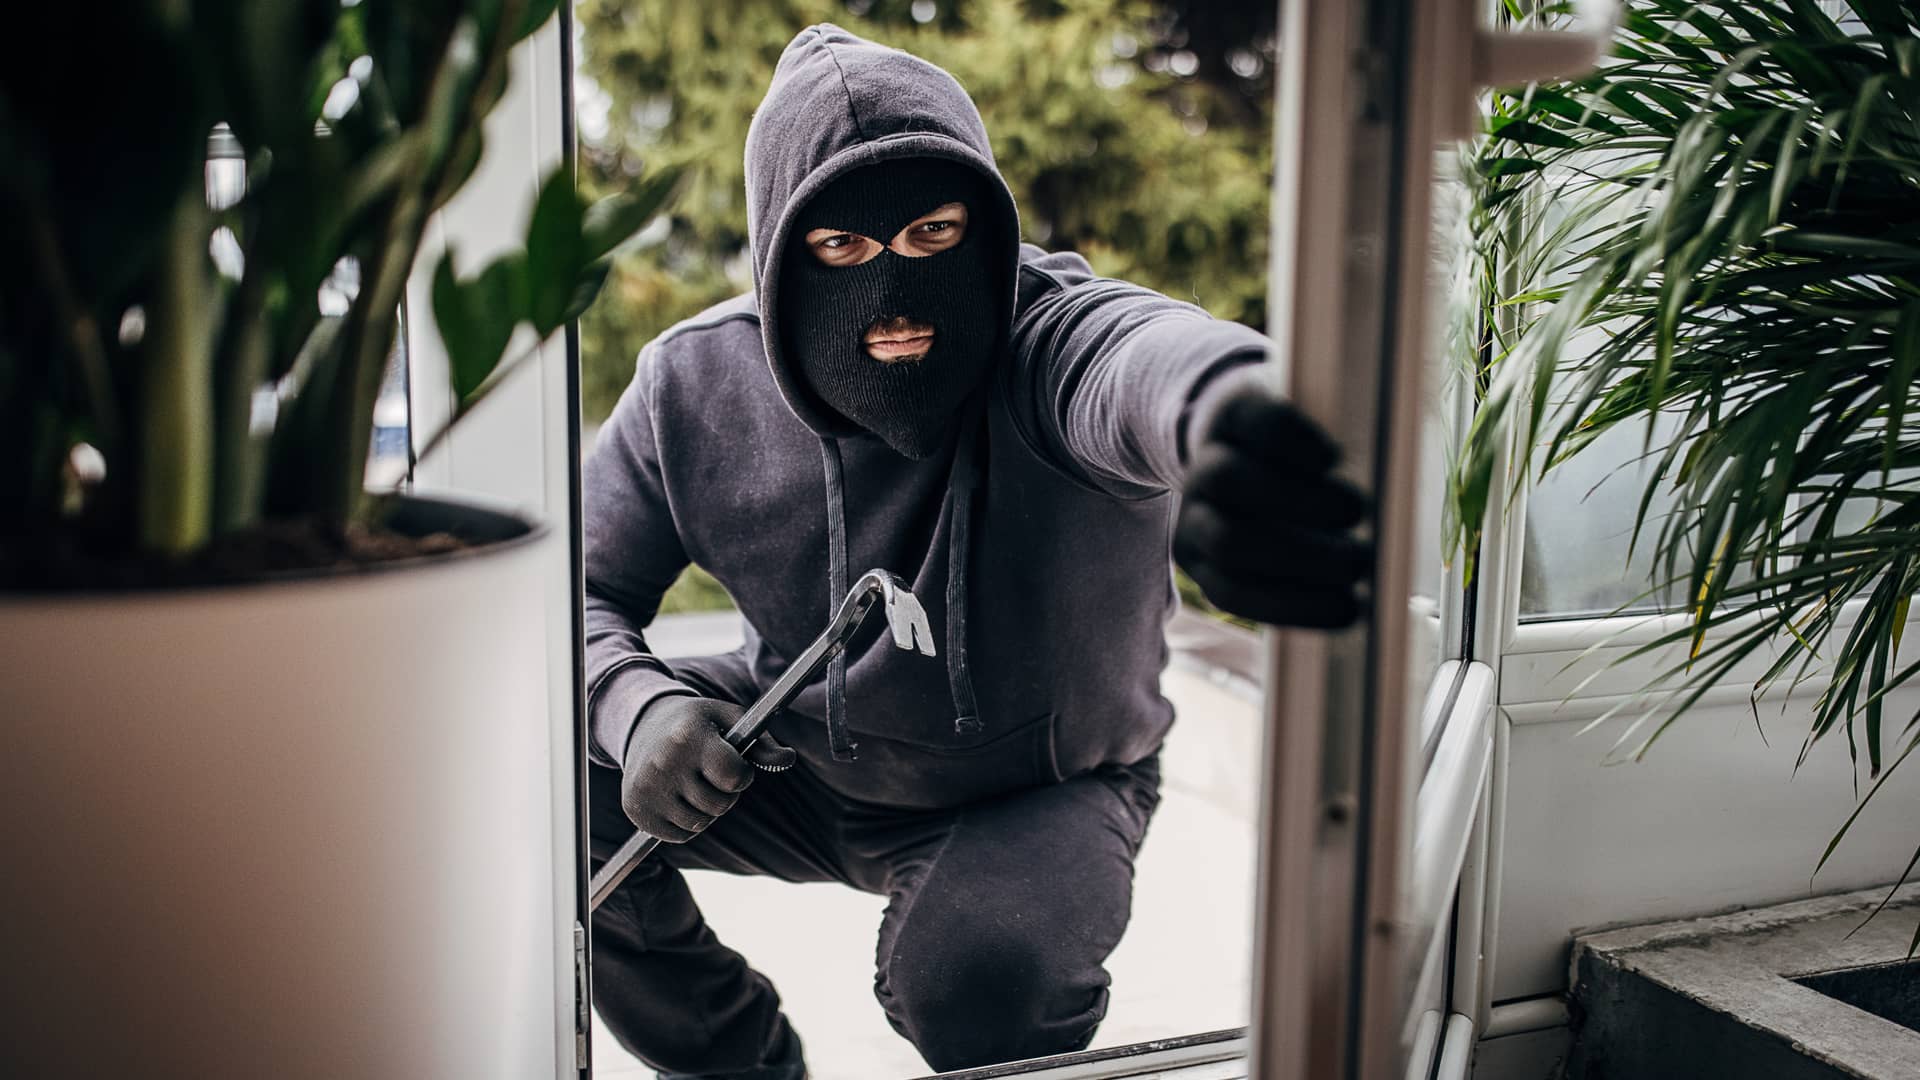 Ladron entrando en una vivienda con seguro de hogar en el que han incluido robo